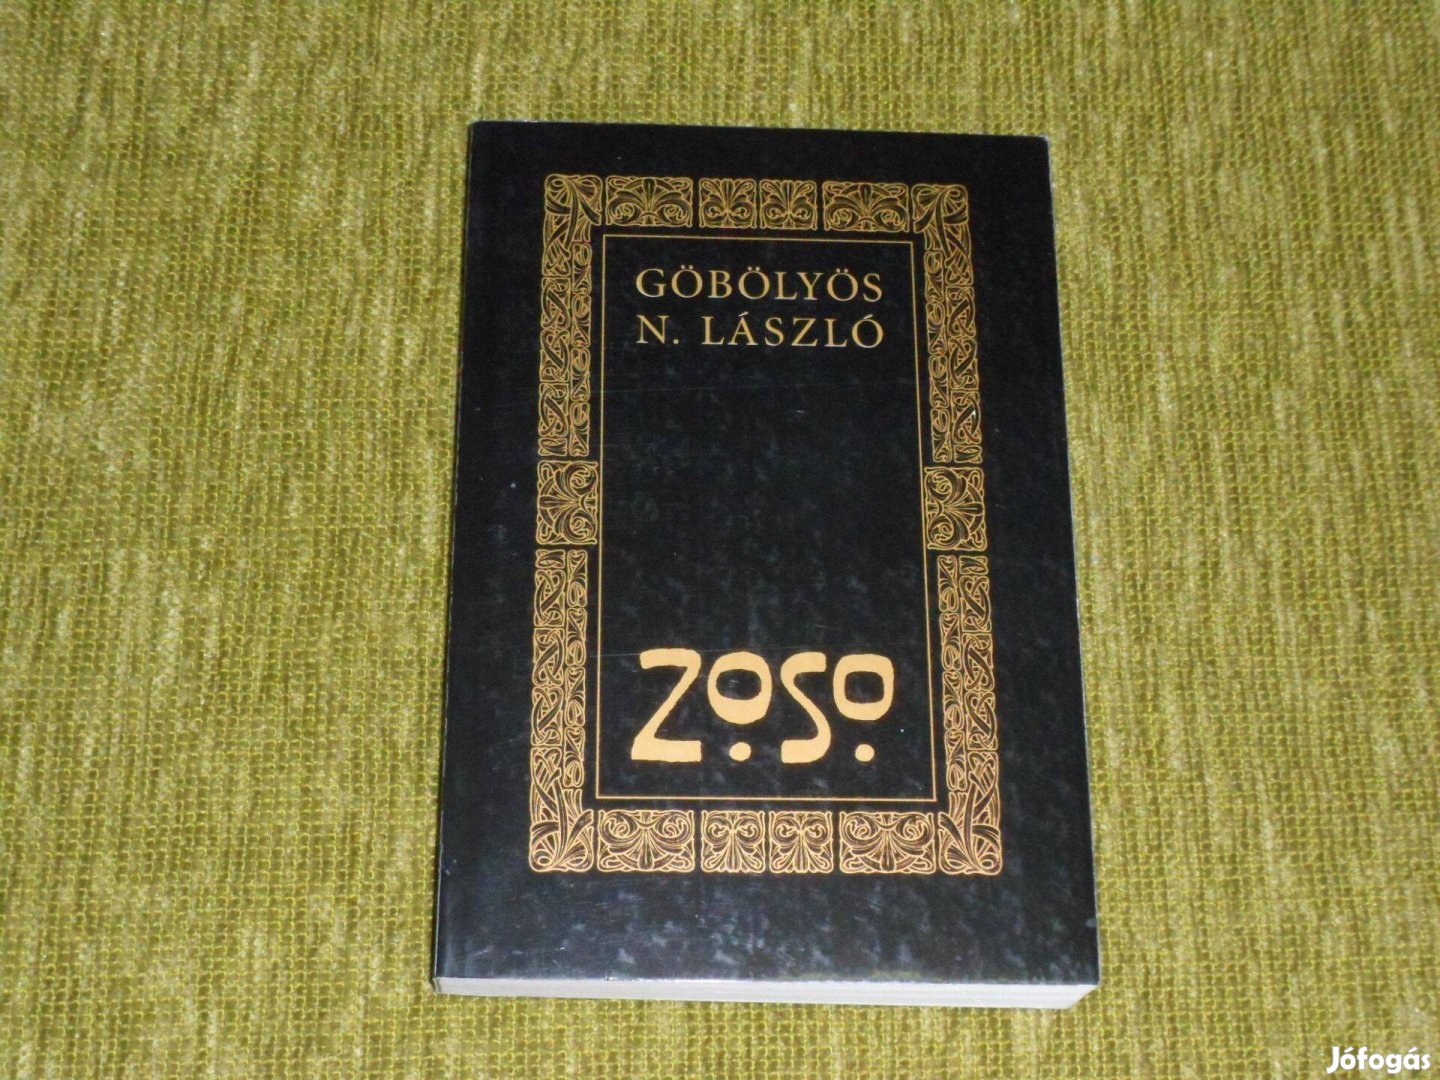 Göbölyös N. László: Zoso (parapszichológia, jóslás). A Led Zeppelin